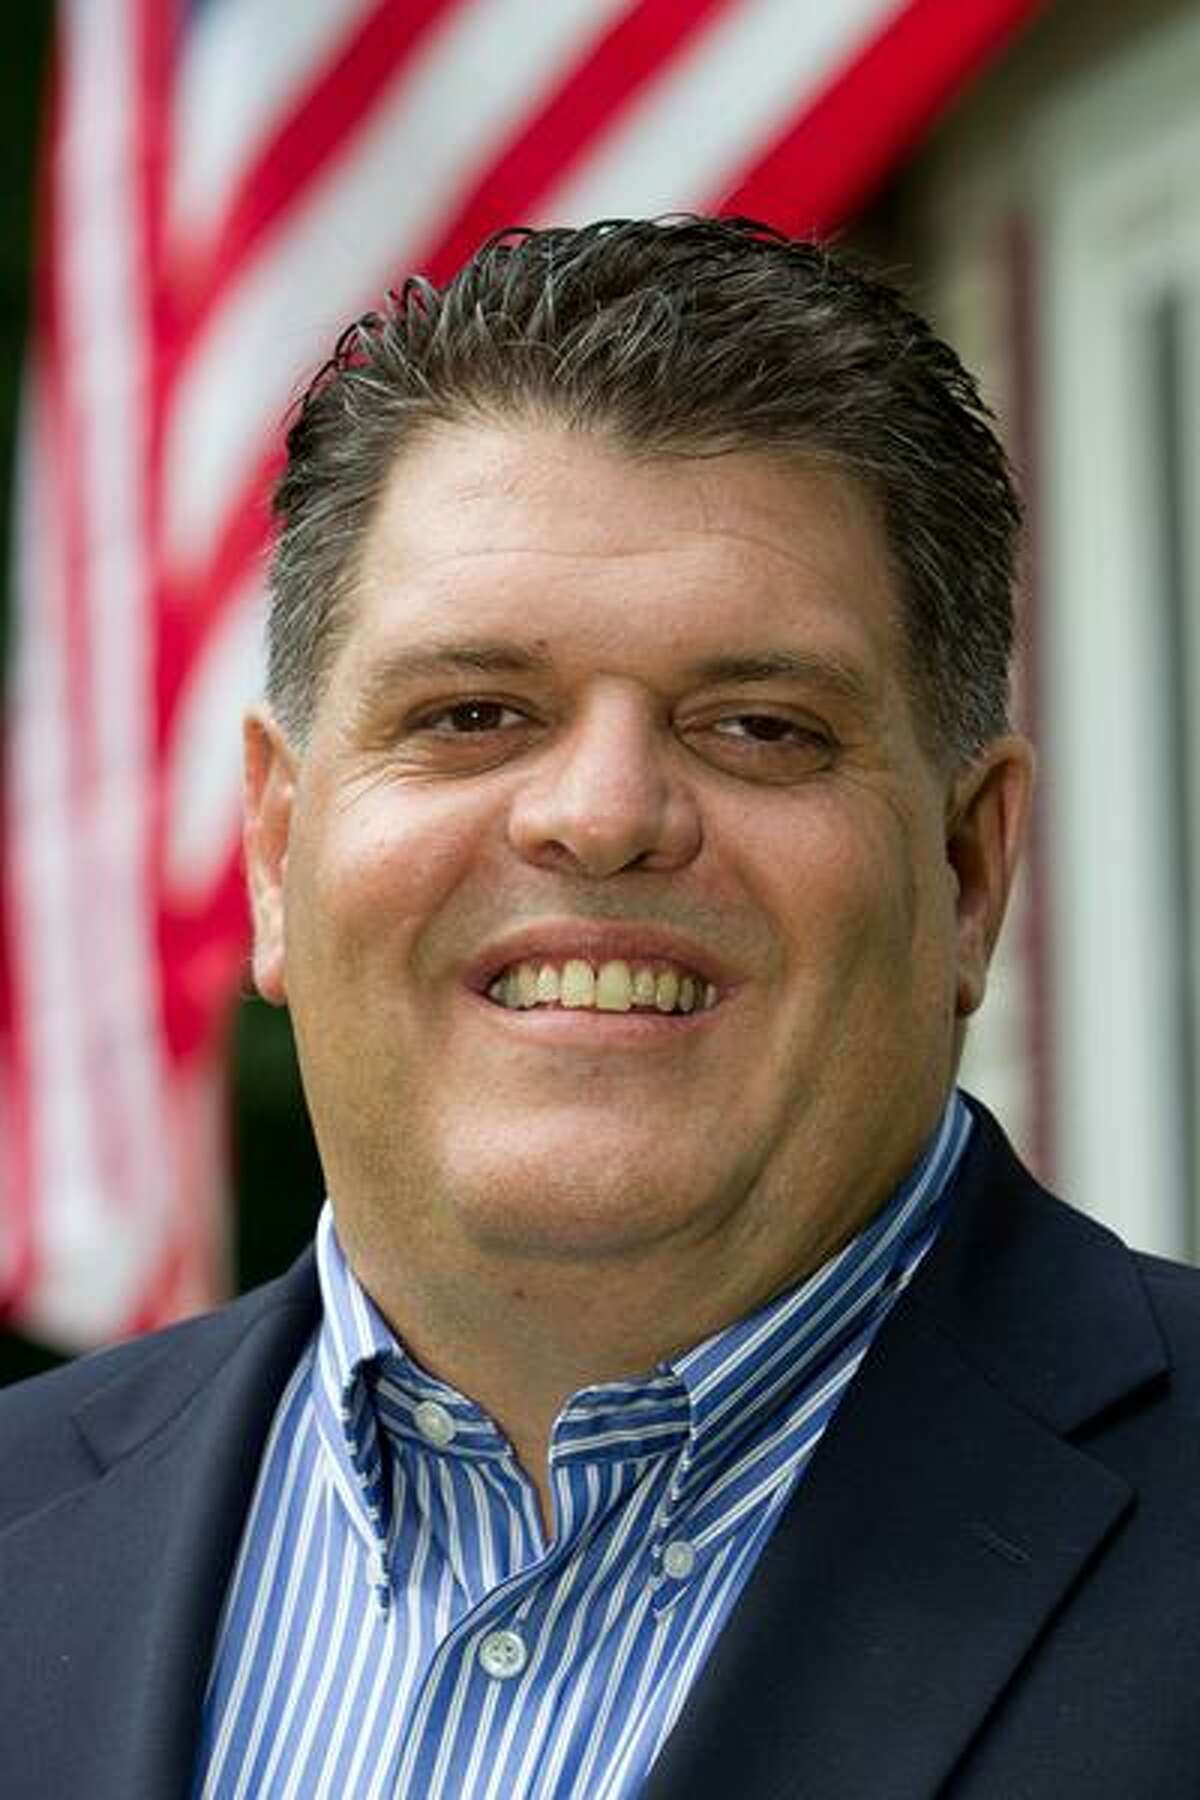 State Rep. Dave Rutigliano, R- Trumbull.